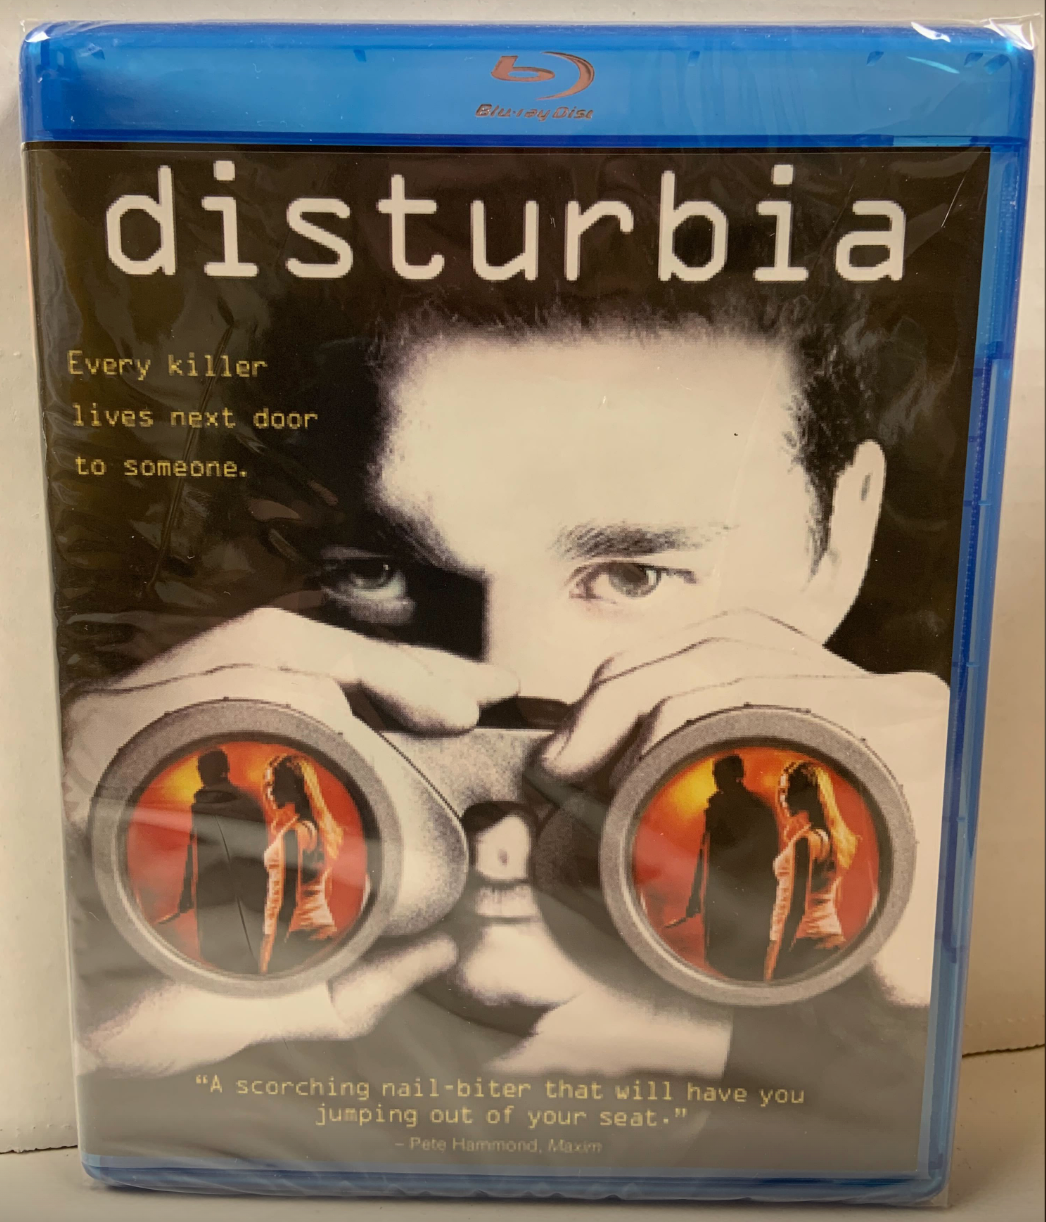 Disturbia Blu-ray